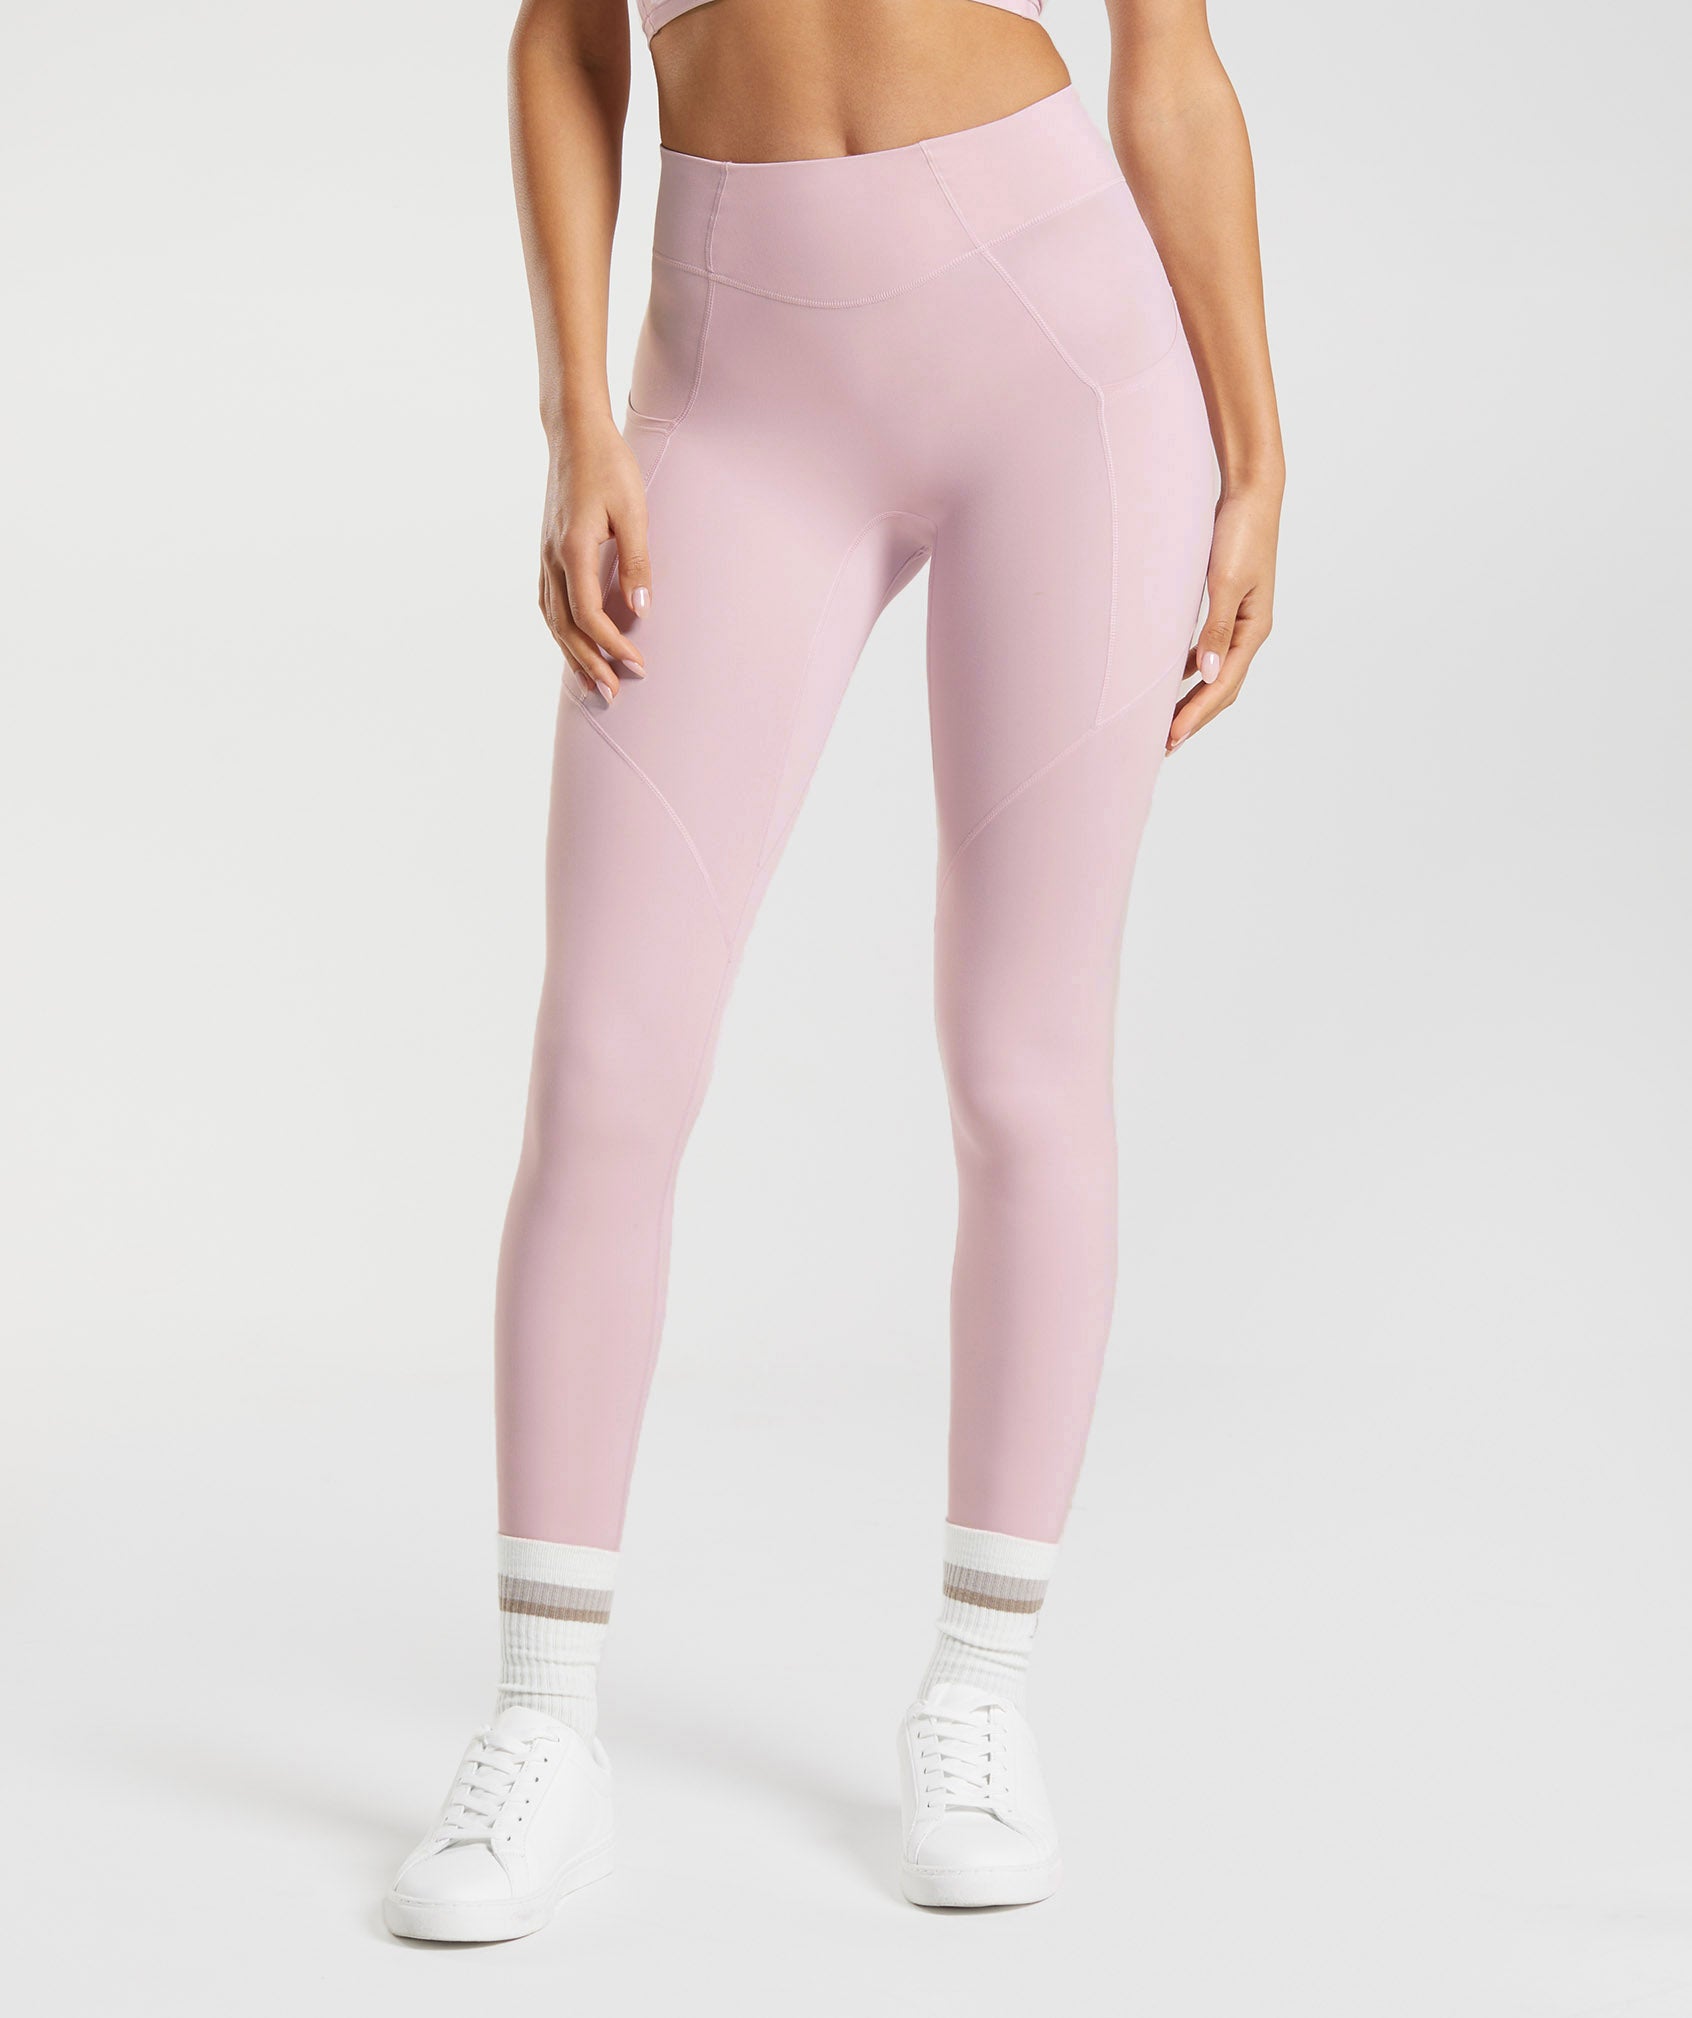 VS light pink leggings